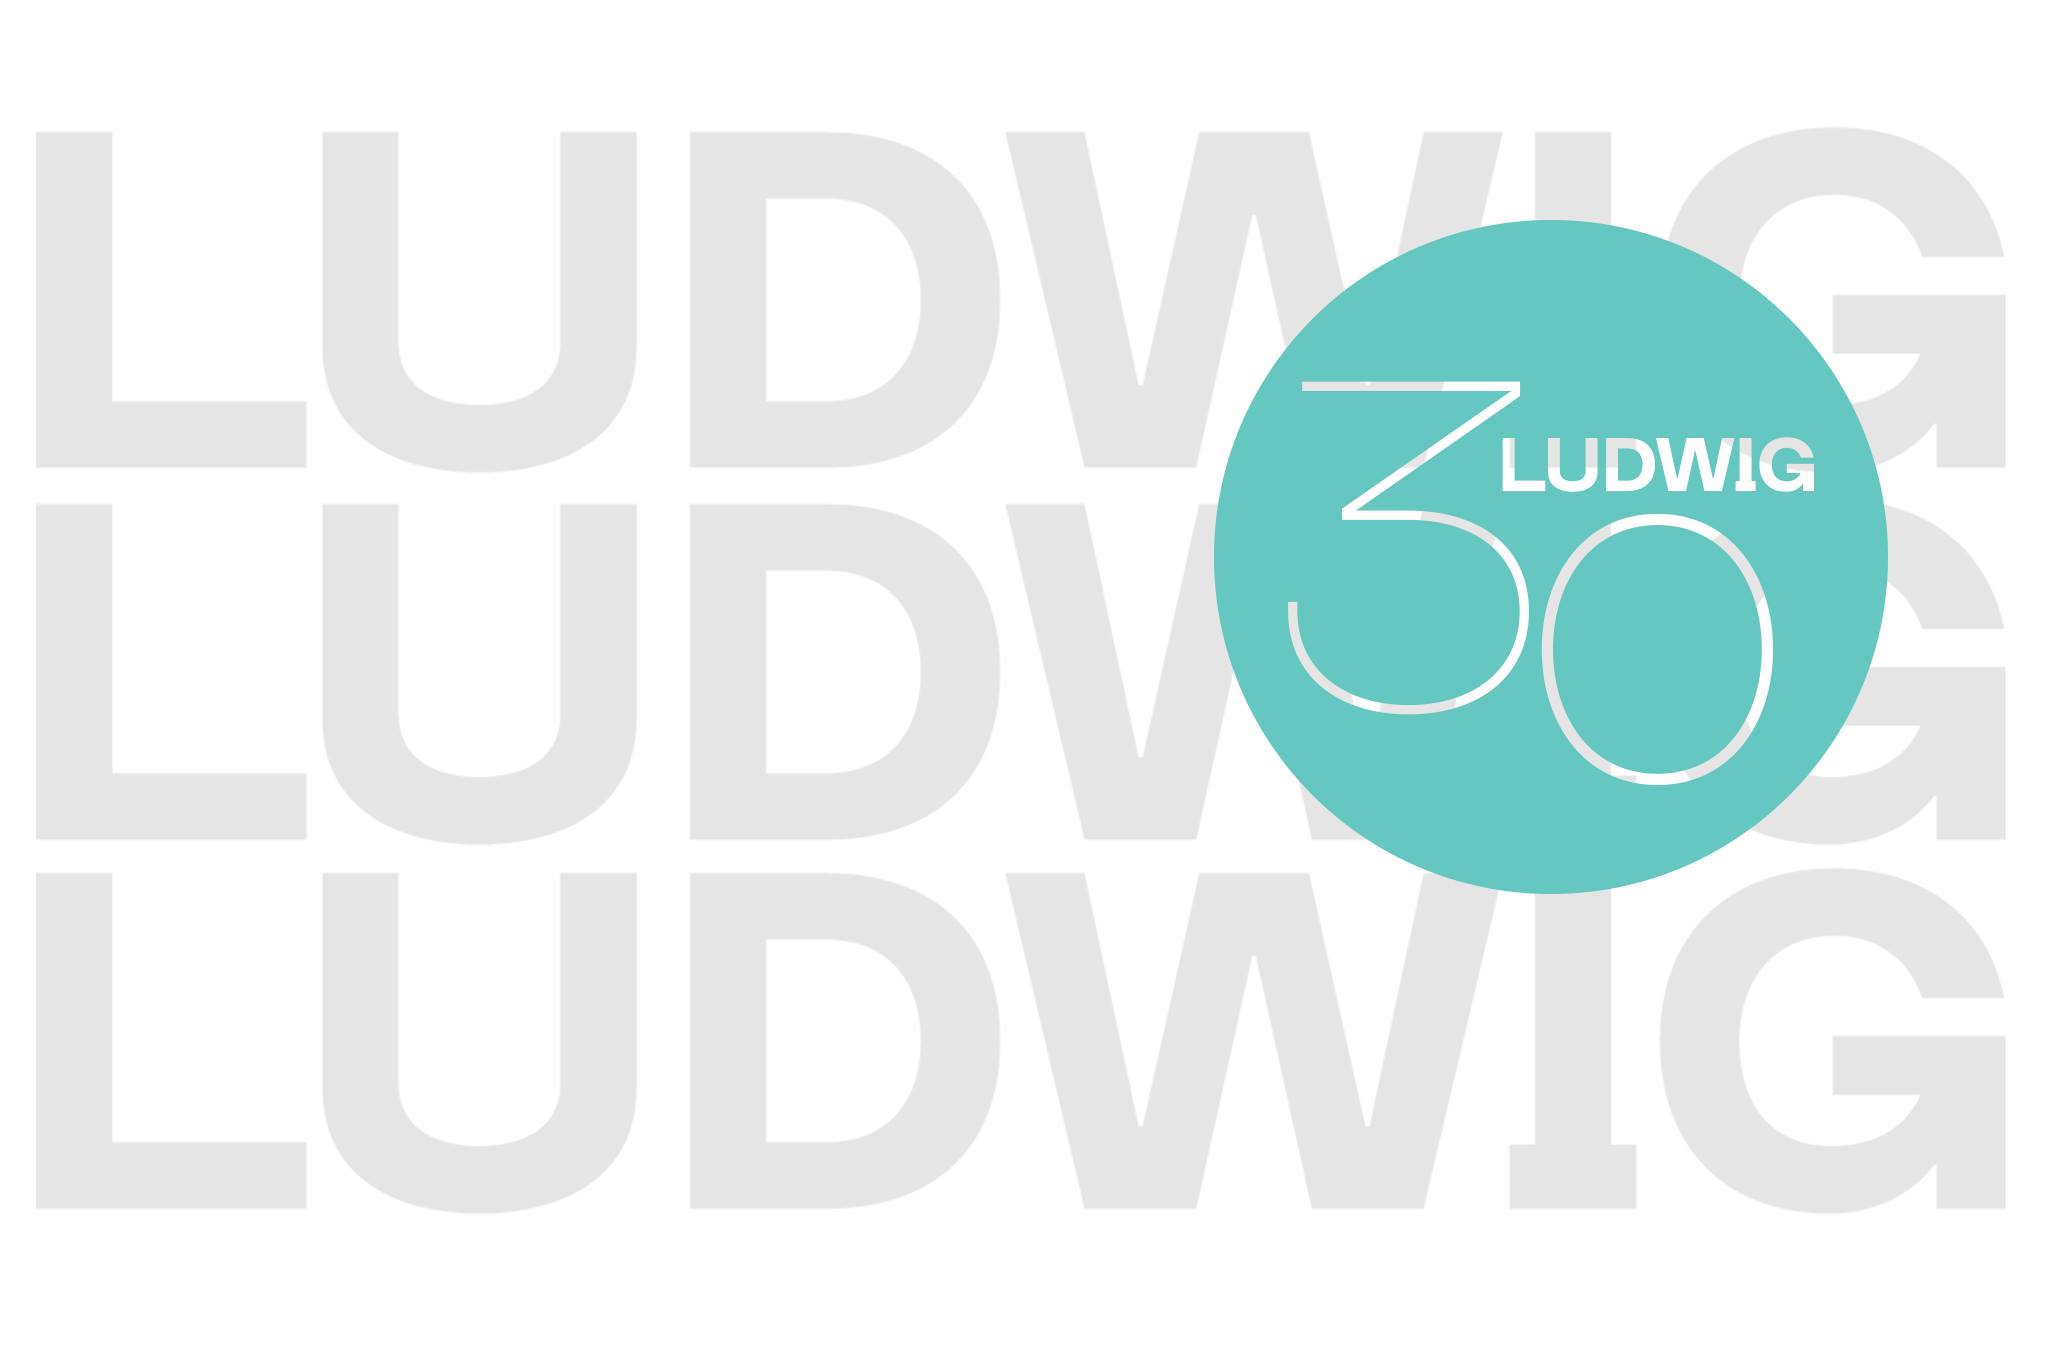 Ludwig 30 – Mindig kortárs